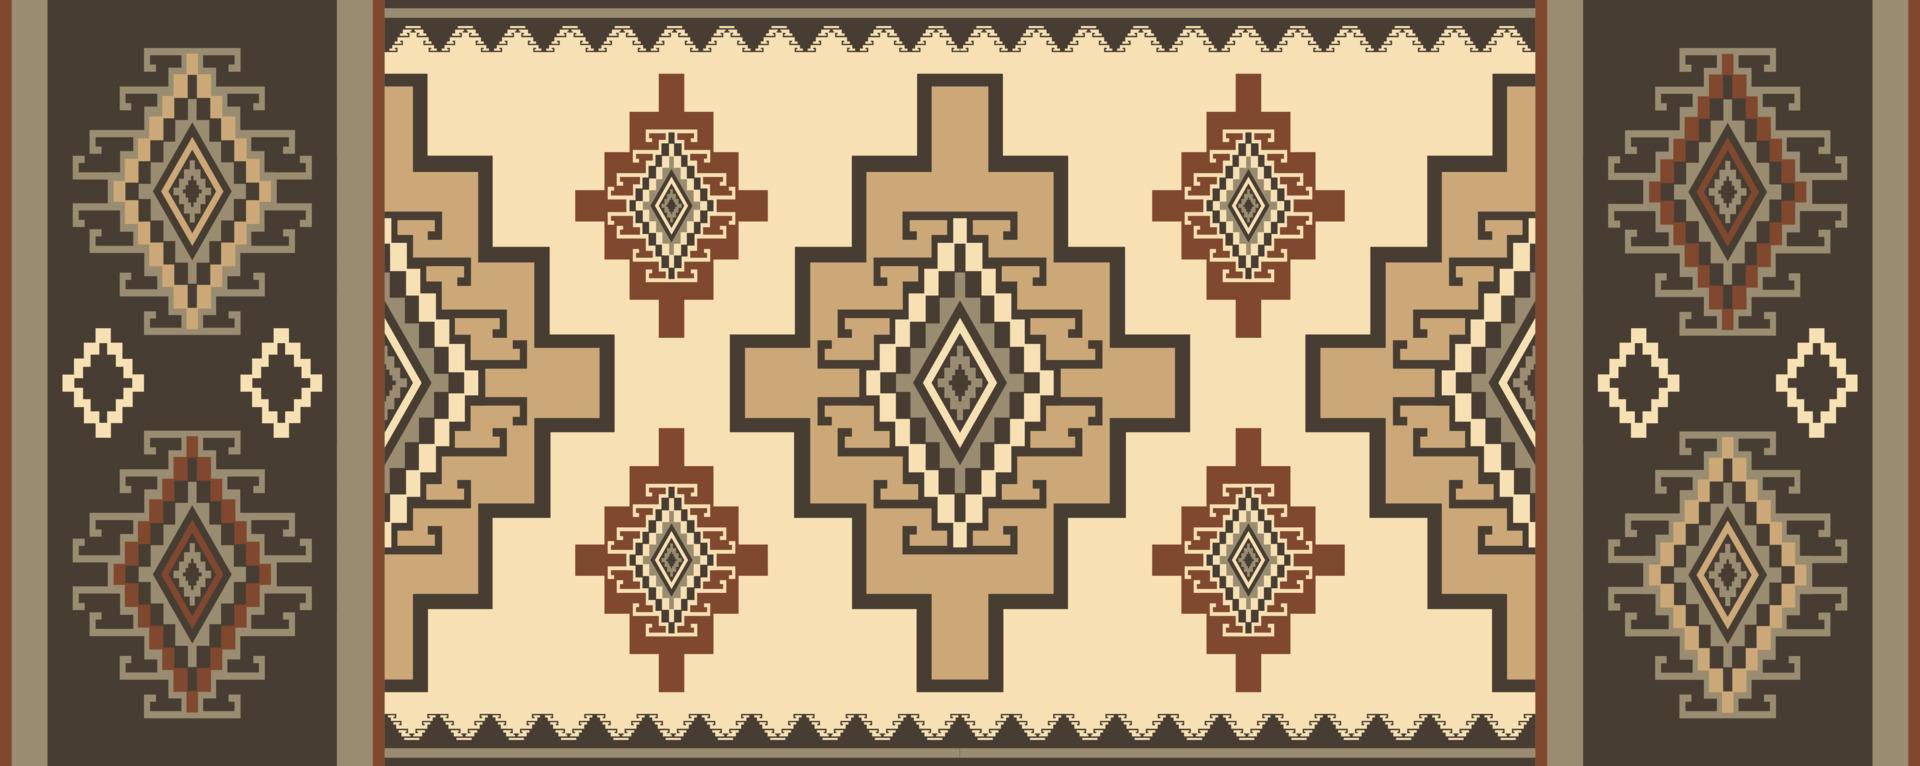 padrão geométrico corredor étnico. asteca kilim corredor padrão geométrico cor vintage estilo boho. use para elementos de decoração de pisos domésticos, carpete, tapete de área, tapeçaria, tapete ou corredor decorativo. vetor